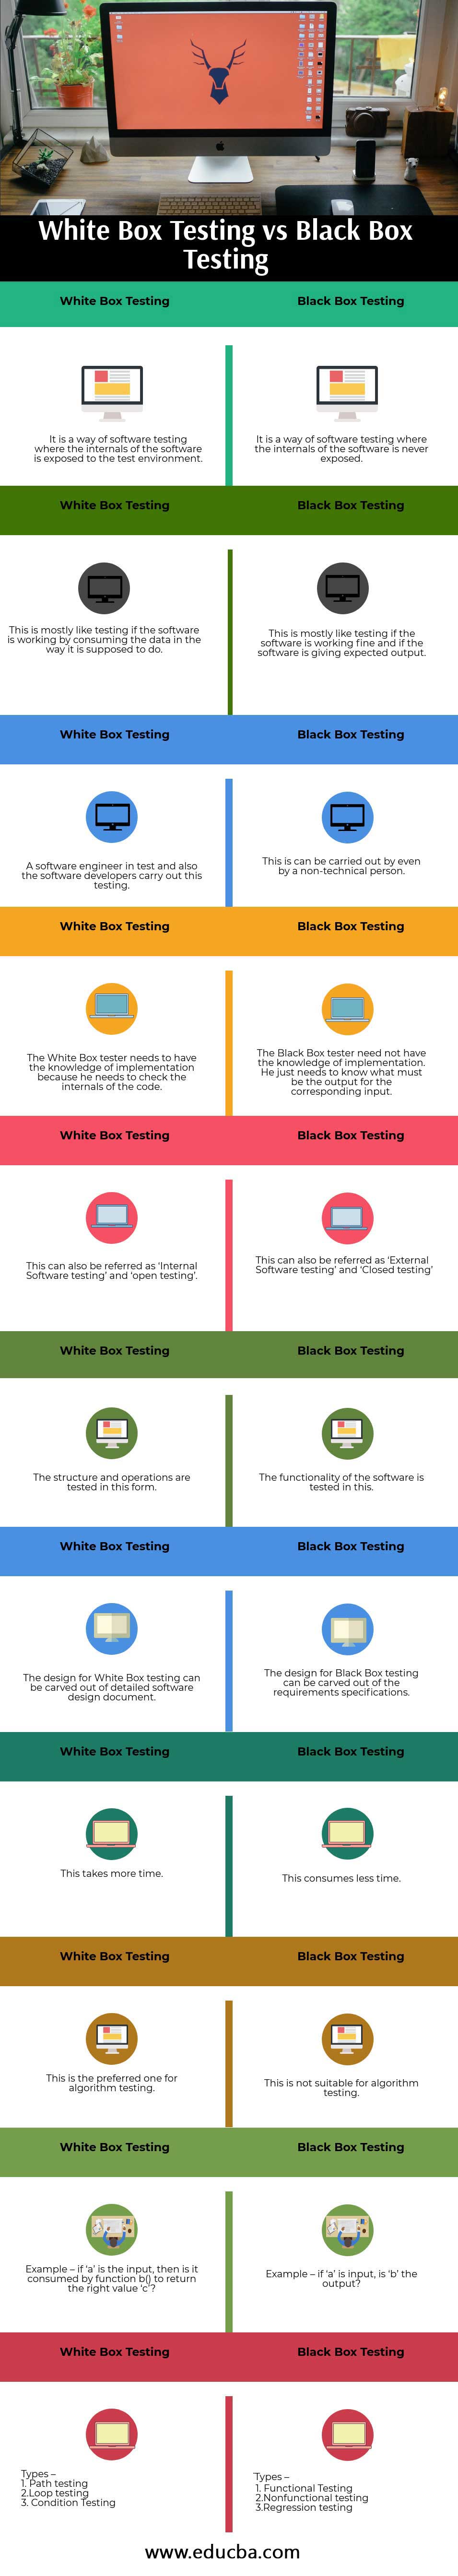 White Box Testing vs Black Box Testing info